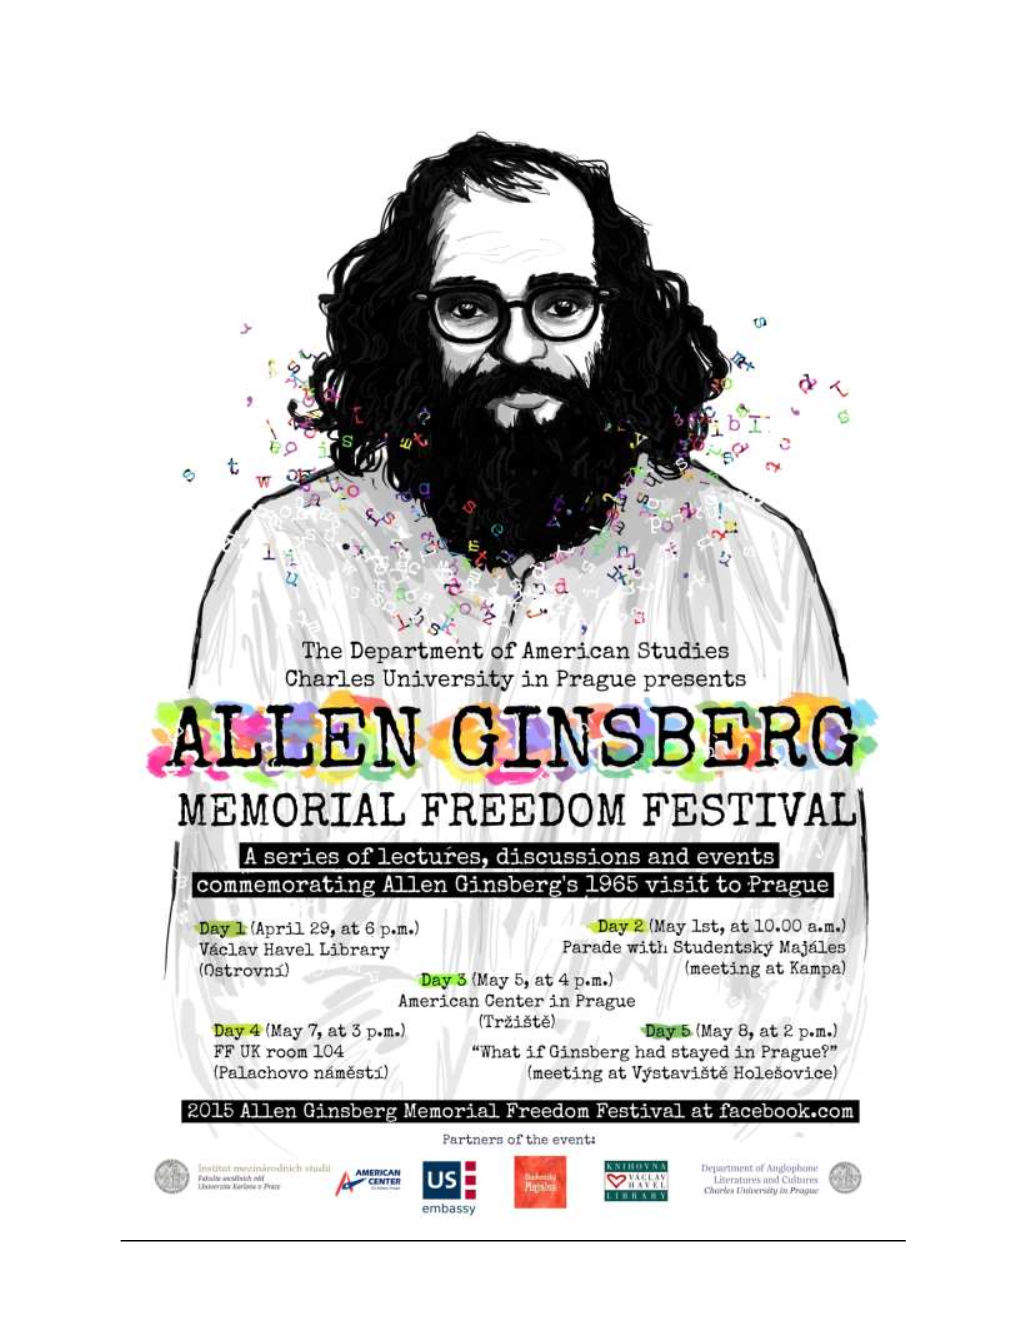 The Allen Ginsberg Memorial Freedom Festival